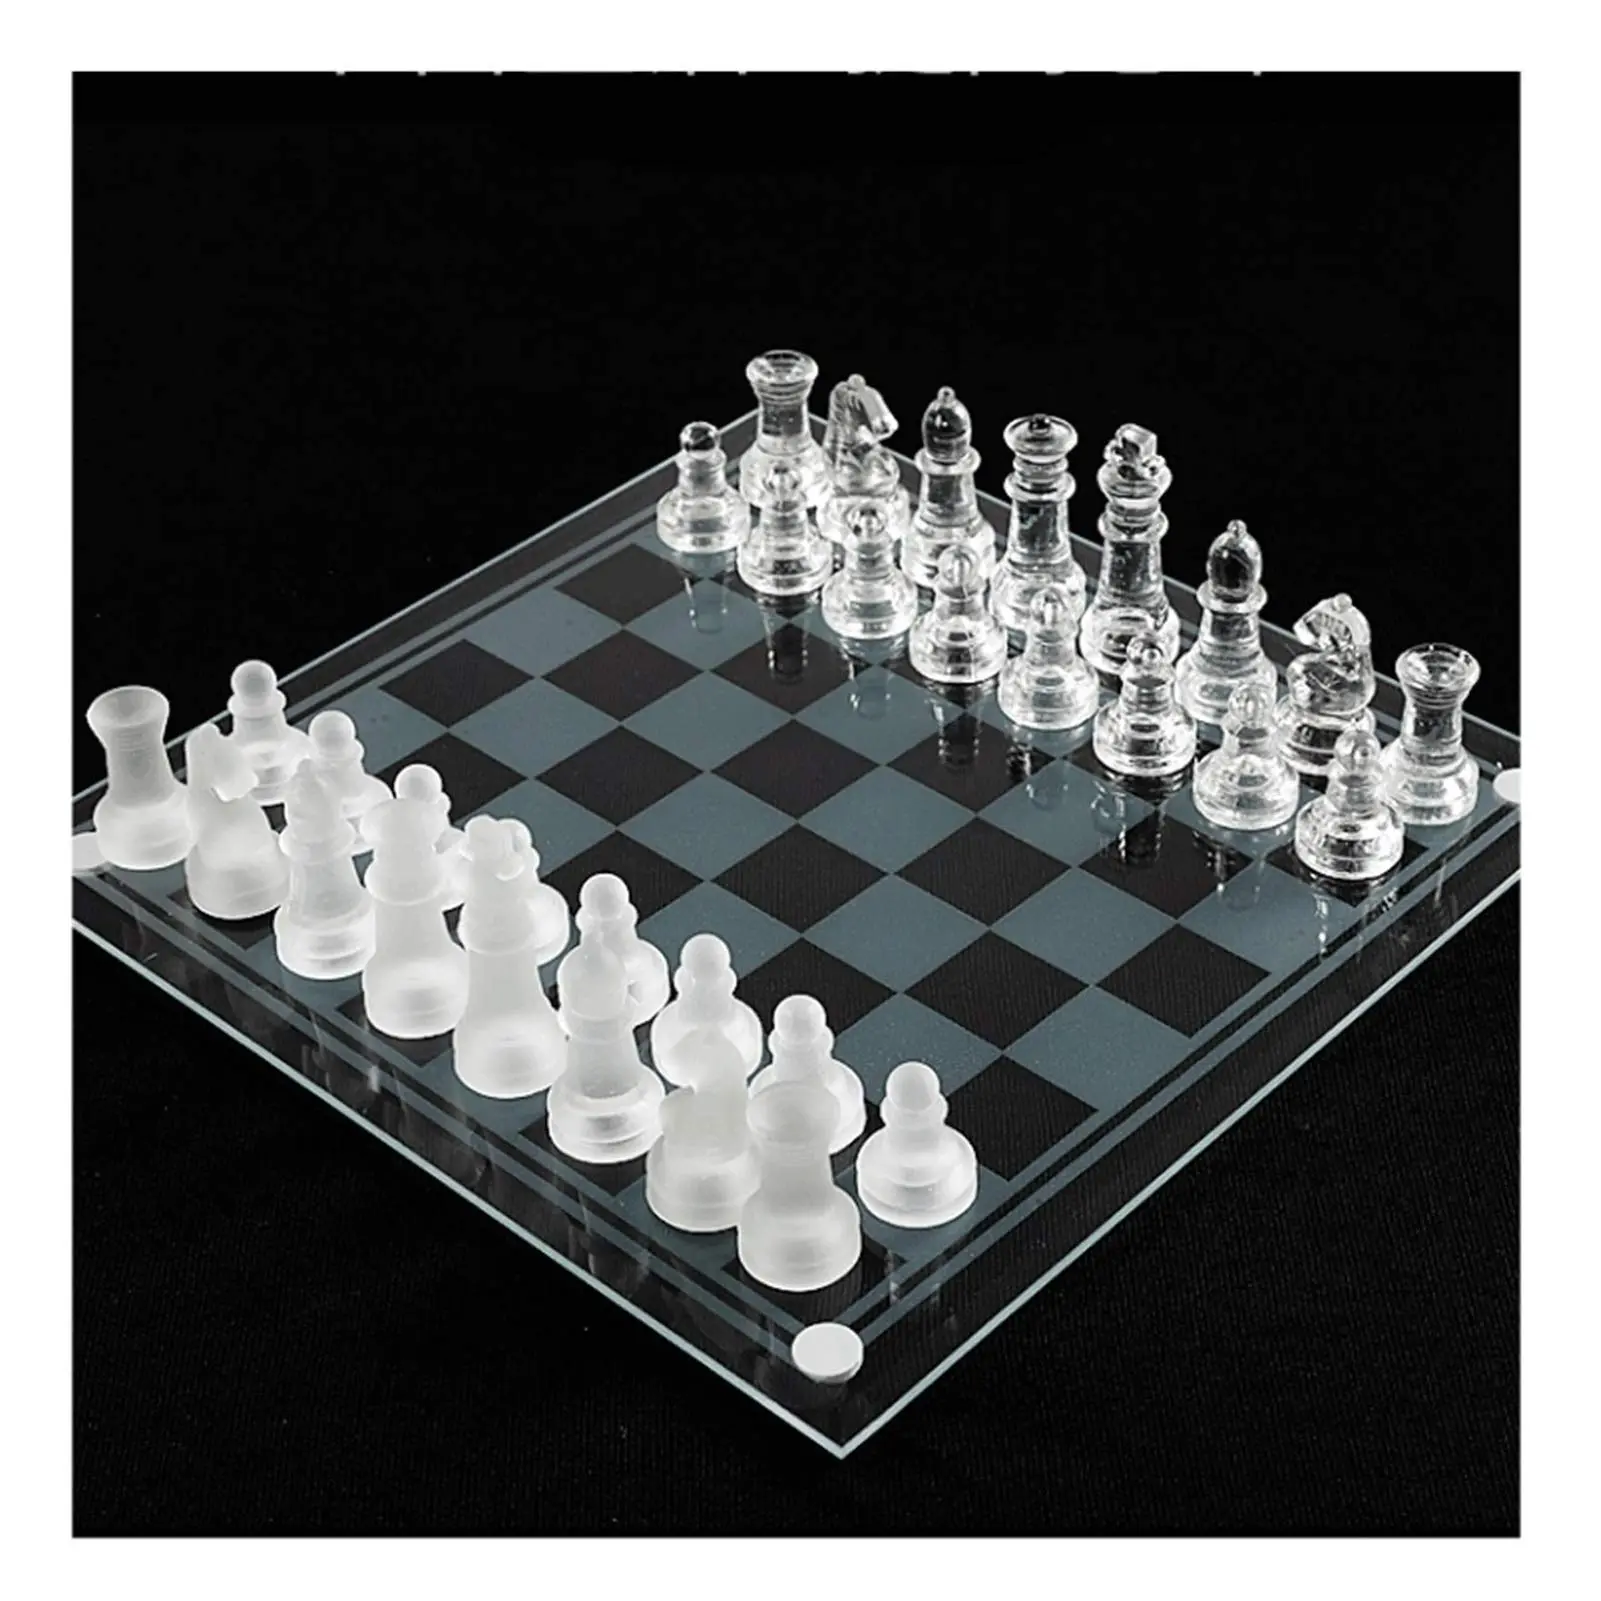 ajedrez de vidrio - Cómo va la pieza de ajedrez